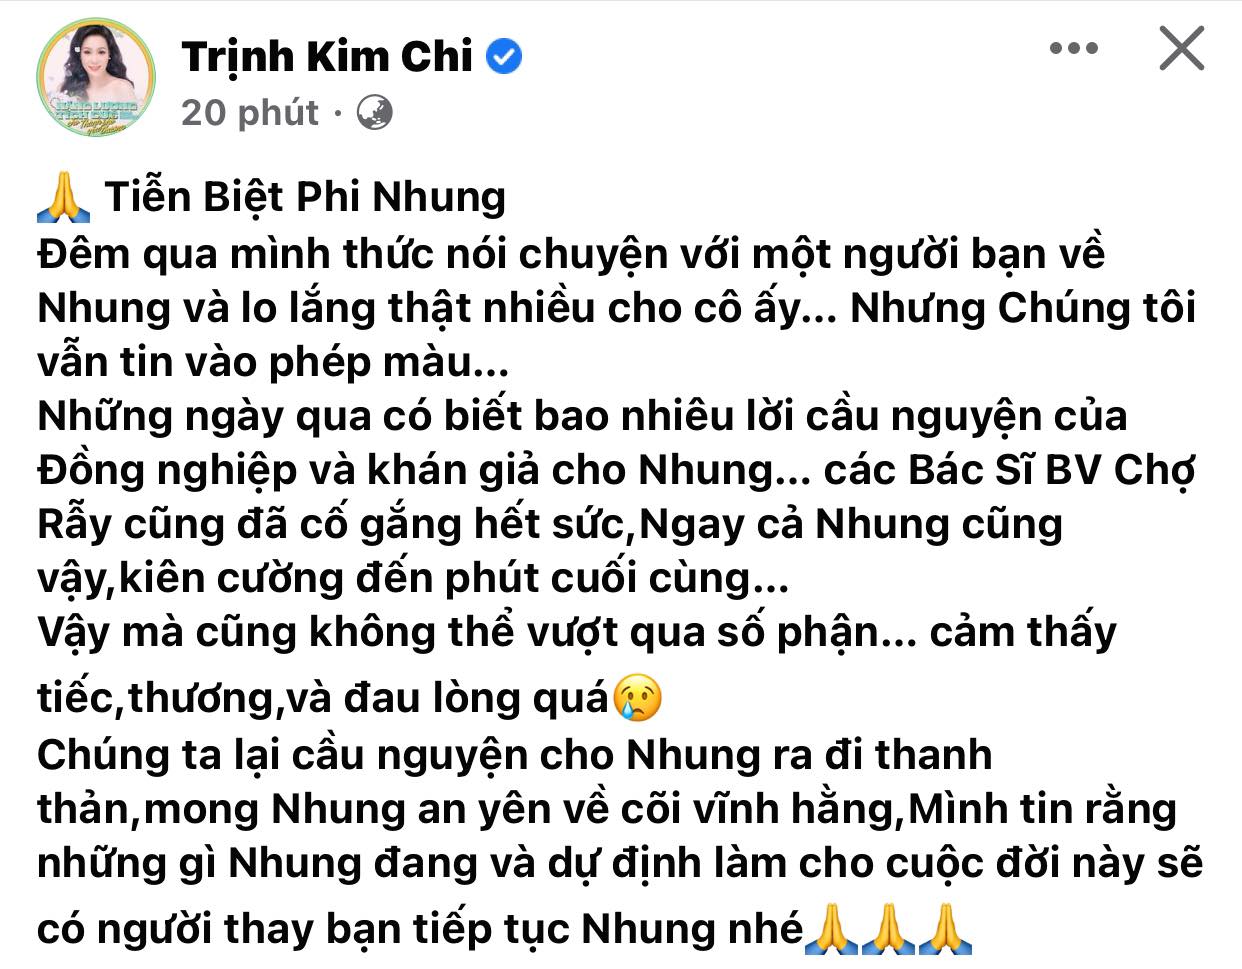 Trung-tam-thuy-nga-colorman-truong-giang-dam-vinh-hung-dau-xot-noi-loi-tien-biet-phi-nhung-8